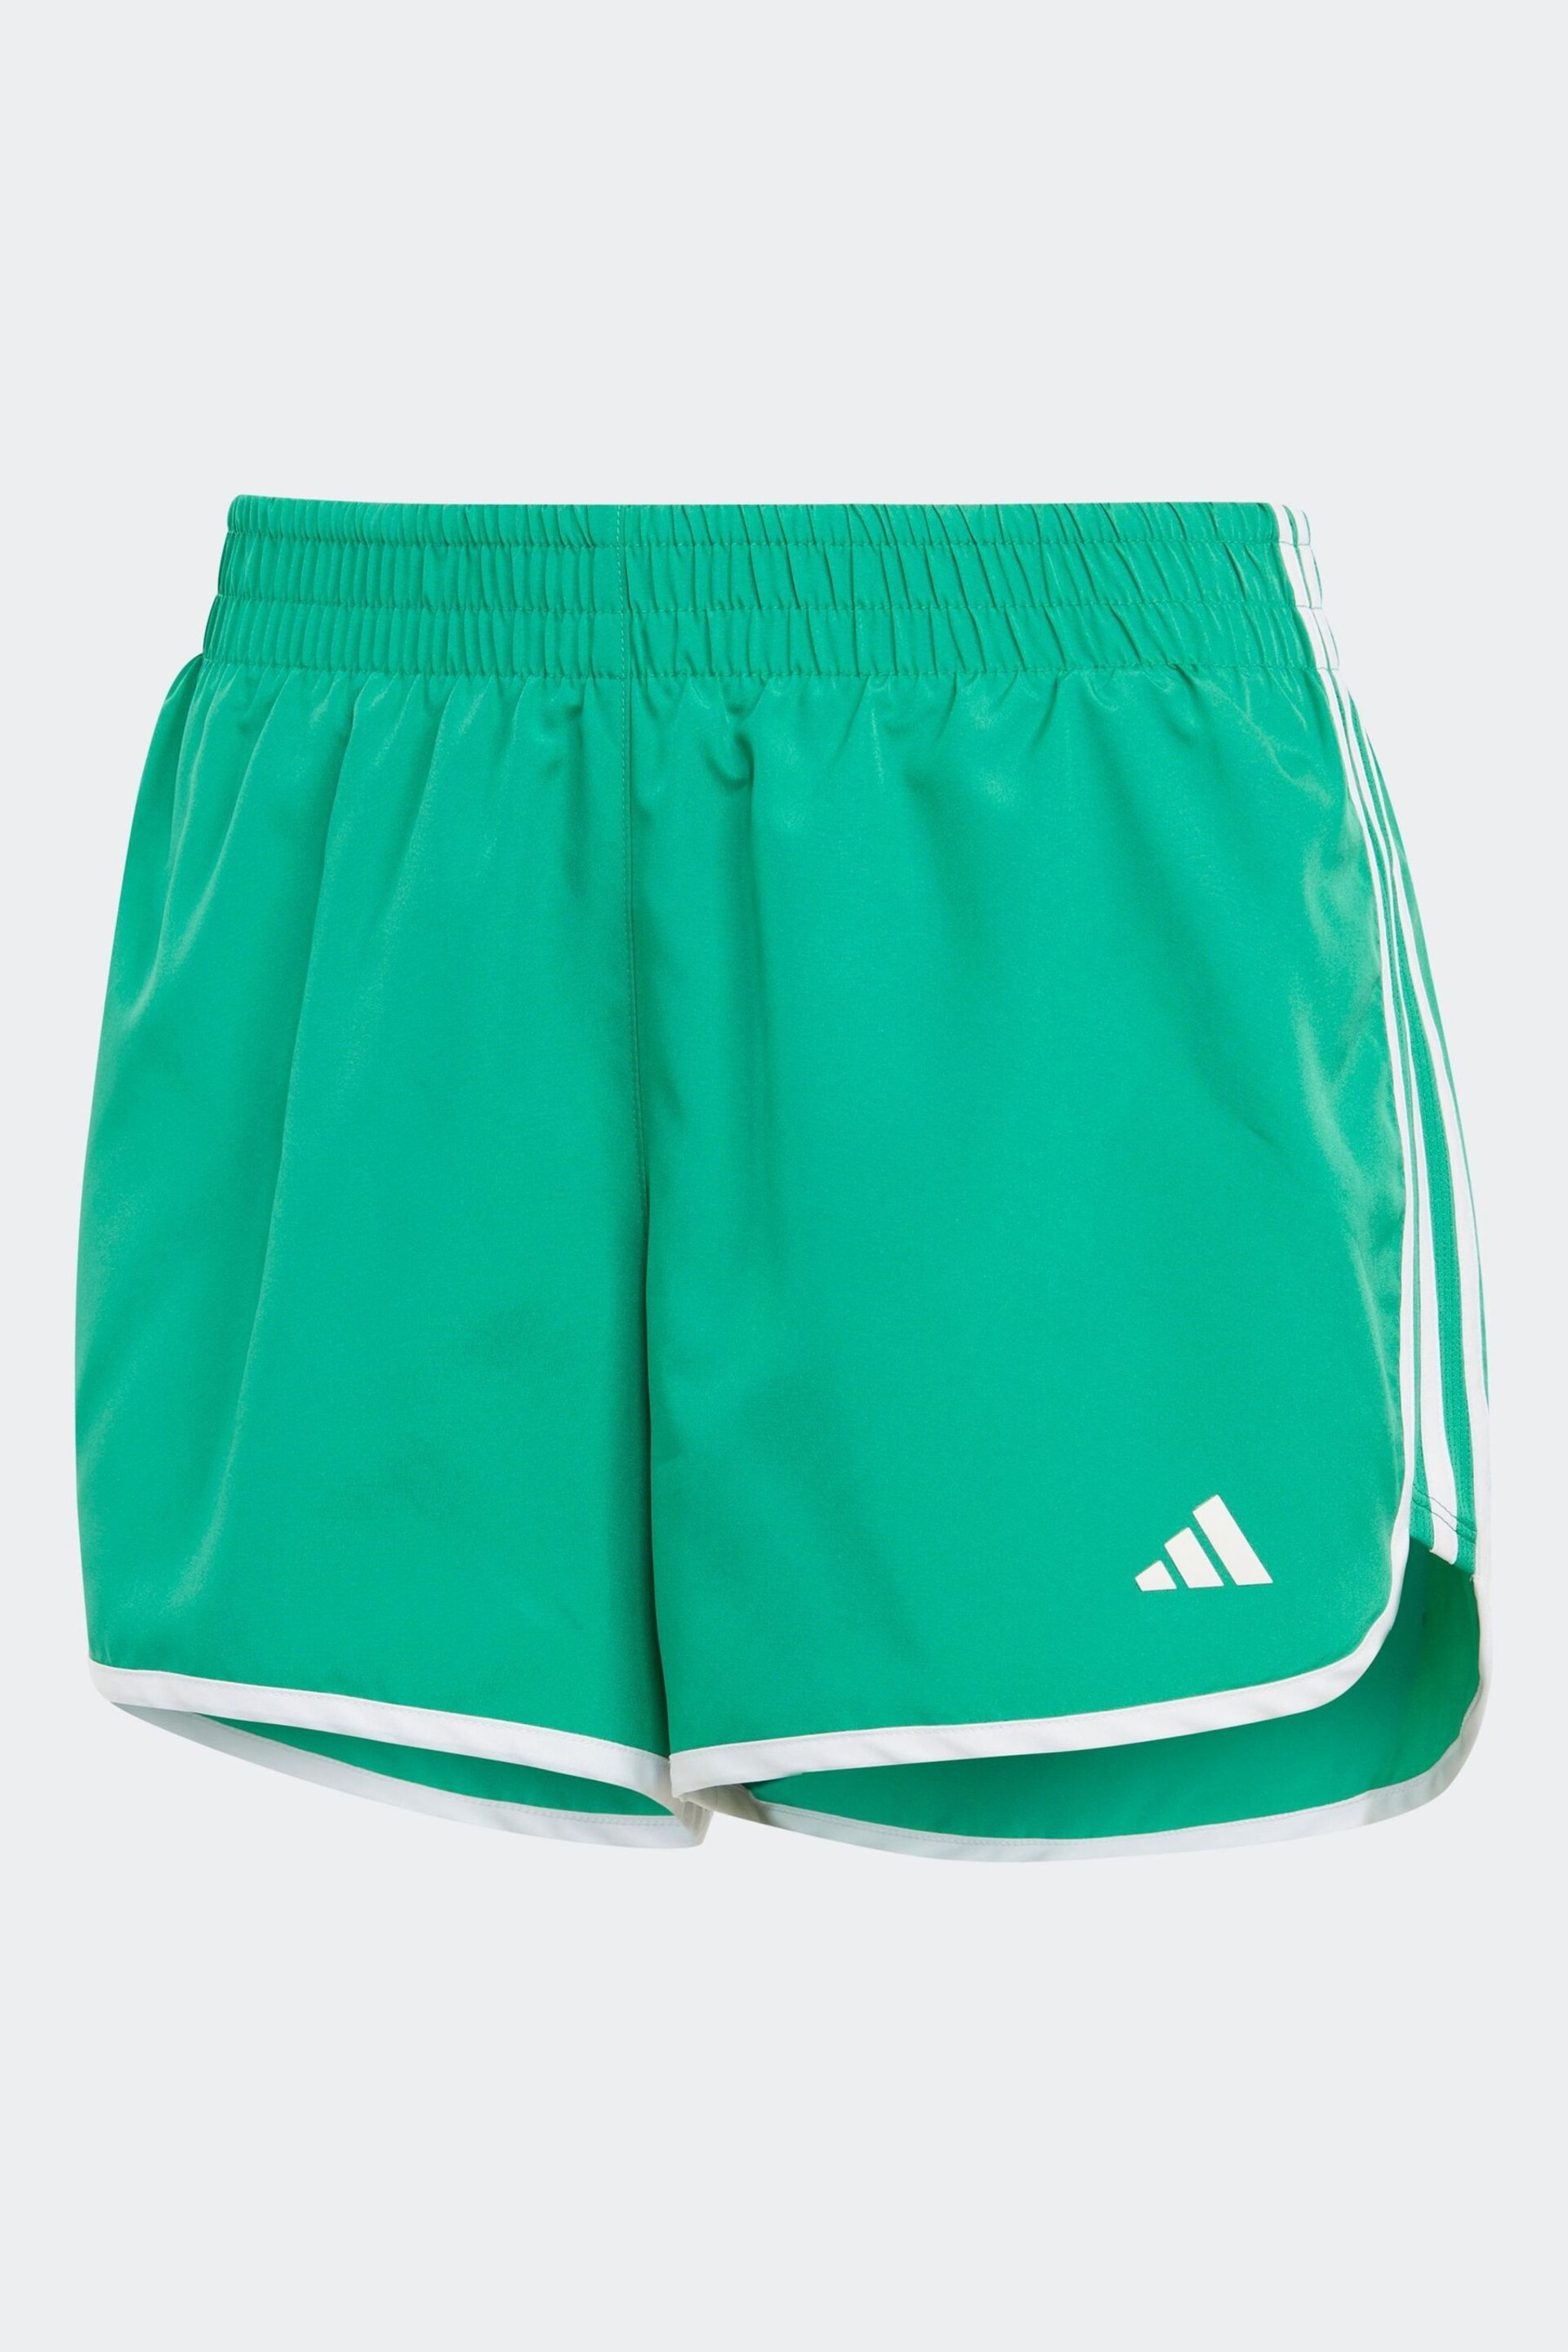 adidas Green M20 Shorts - Image 6 of 6